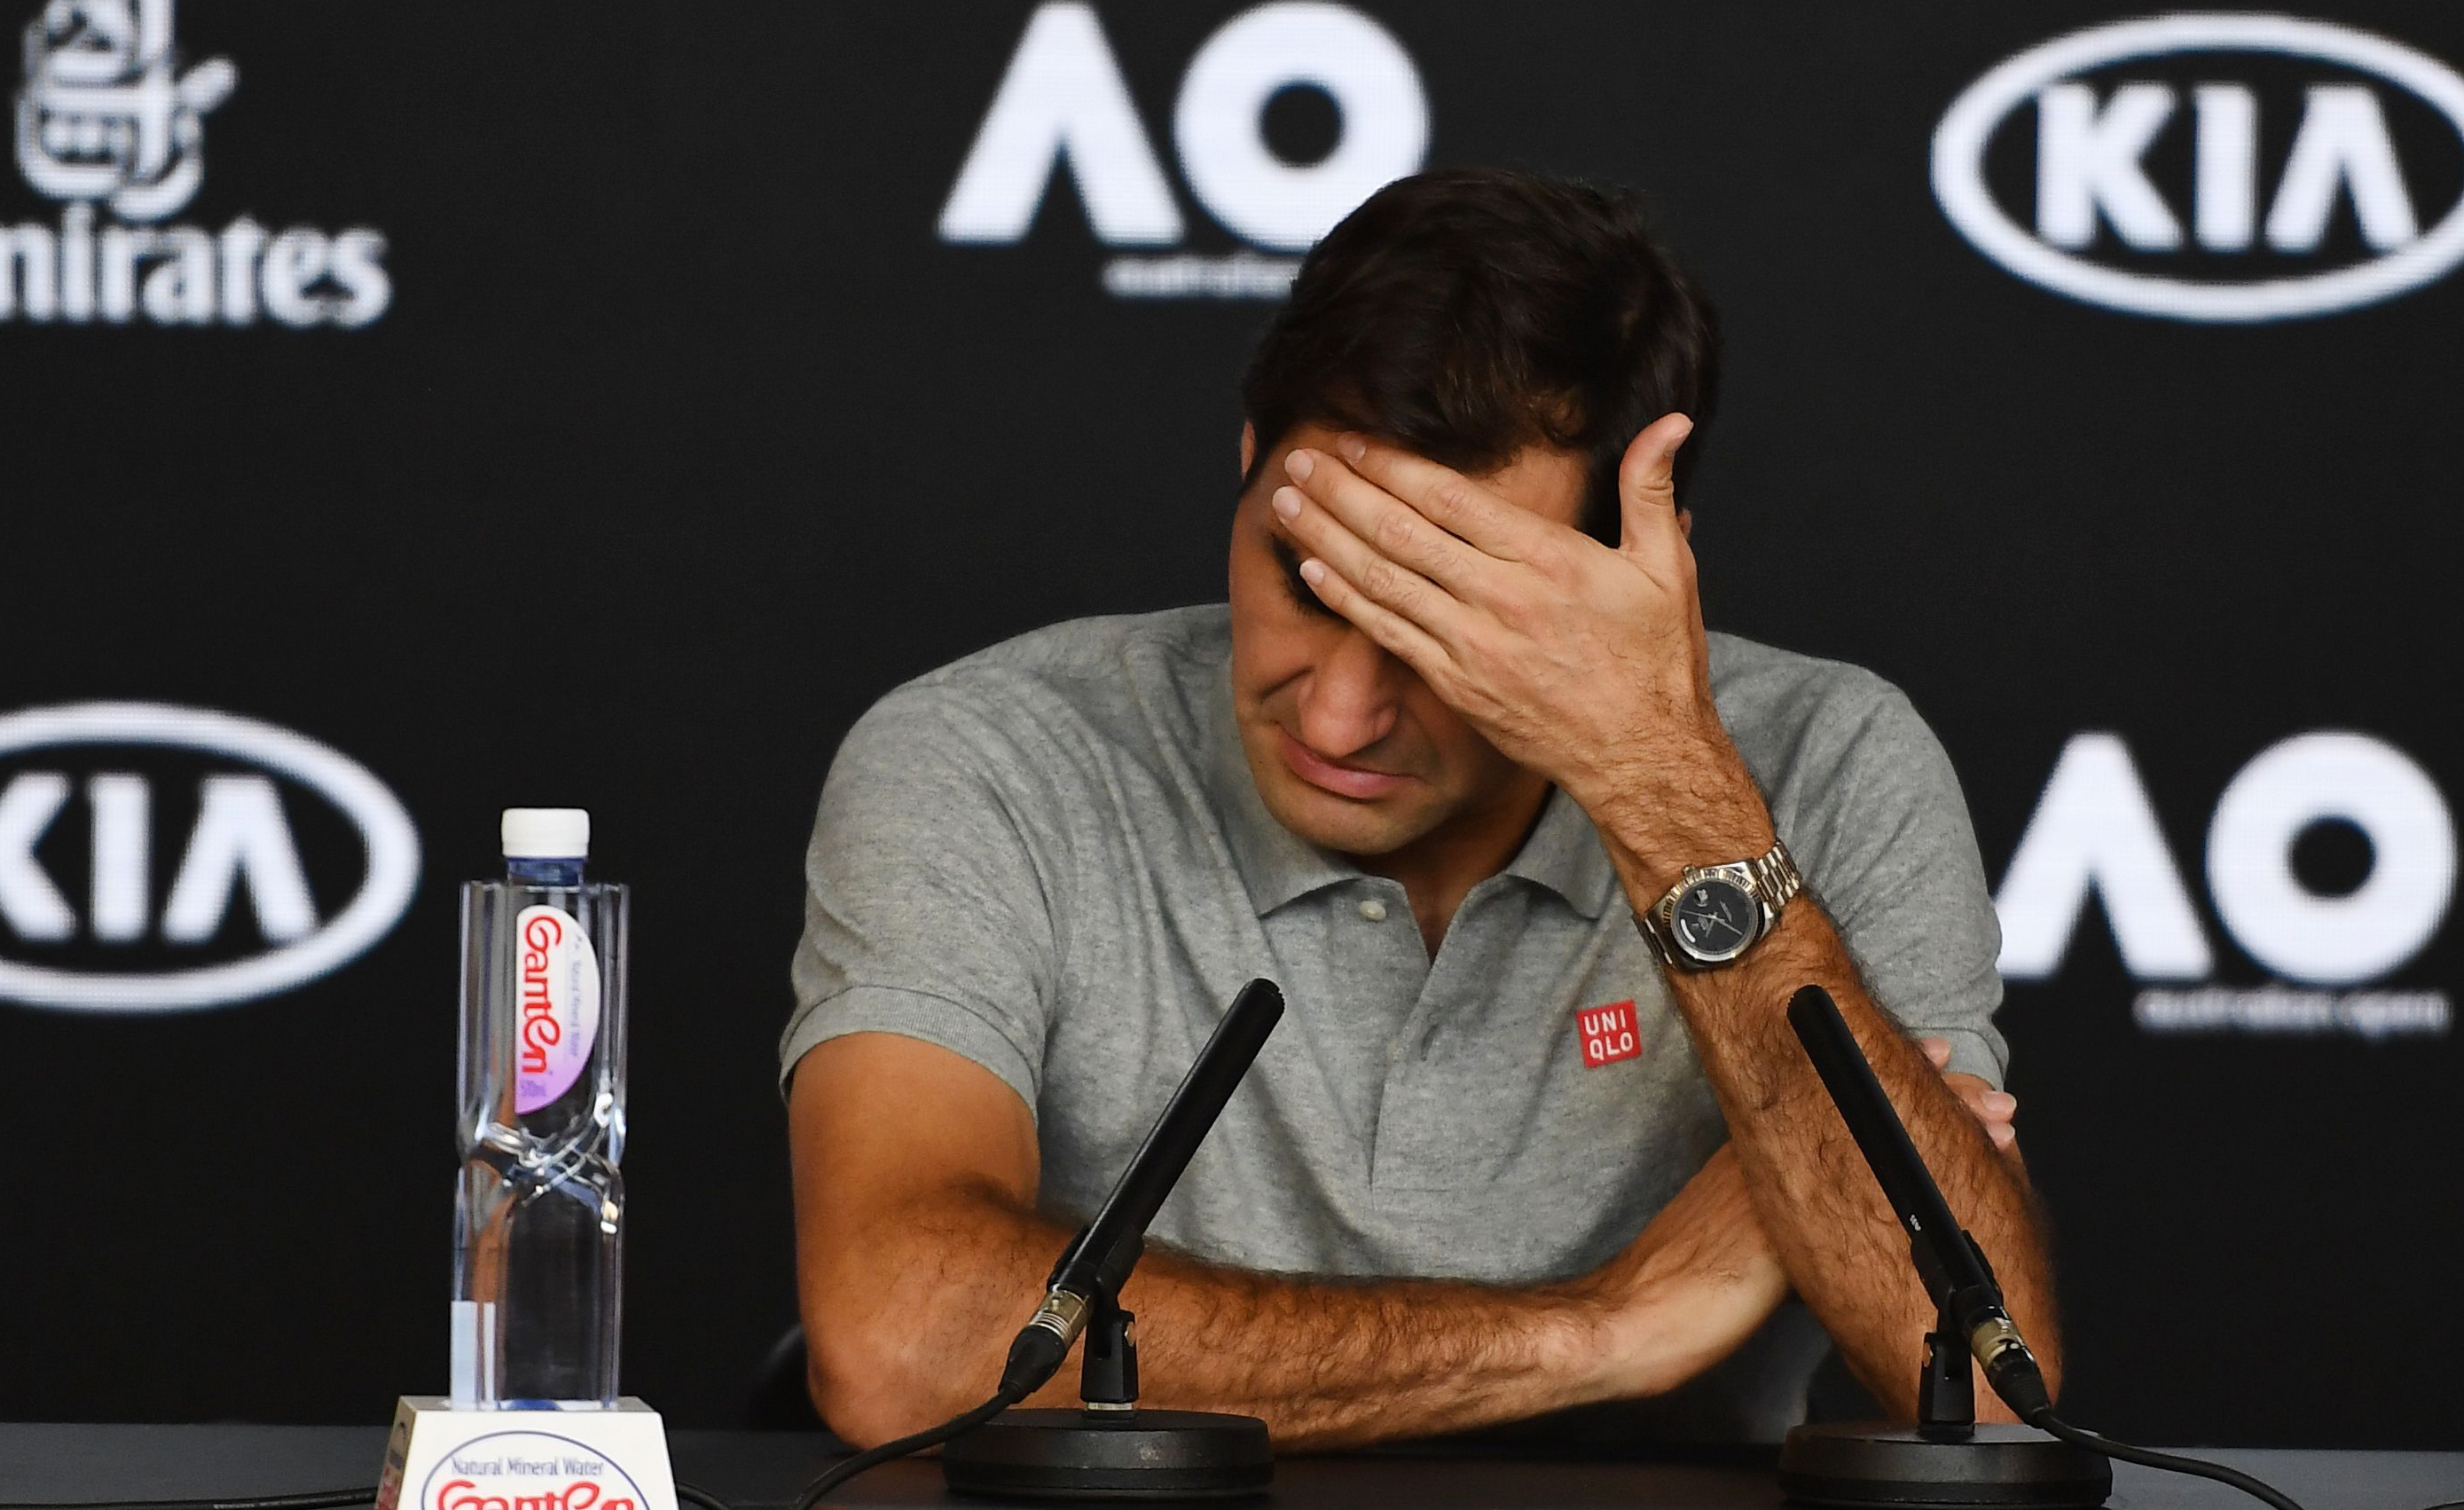 Welche Stars werden in Melbourne fehlen? Zuallererst natürlich Roger Federer, der nach seiner Knie-OP noch nicht fit ist. Ebenfalls nicht dabei: Andy Murray (Corona), Kim Clijsters, Juan Martin del Potro, Jo-Wilfried Tsonga, Kiki Bertens, Madison Keys.